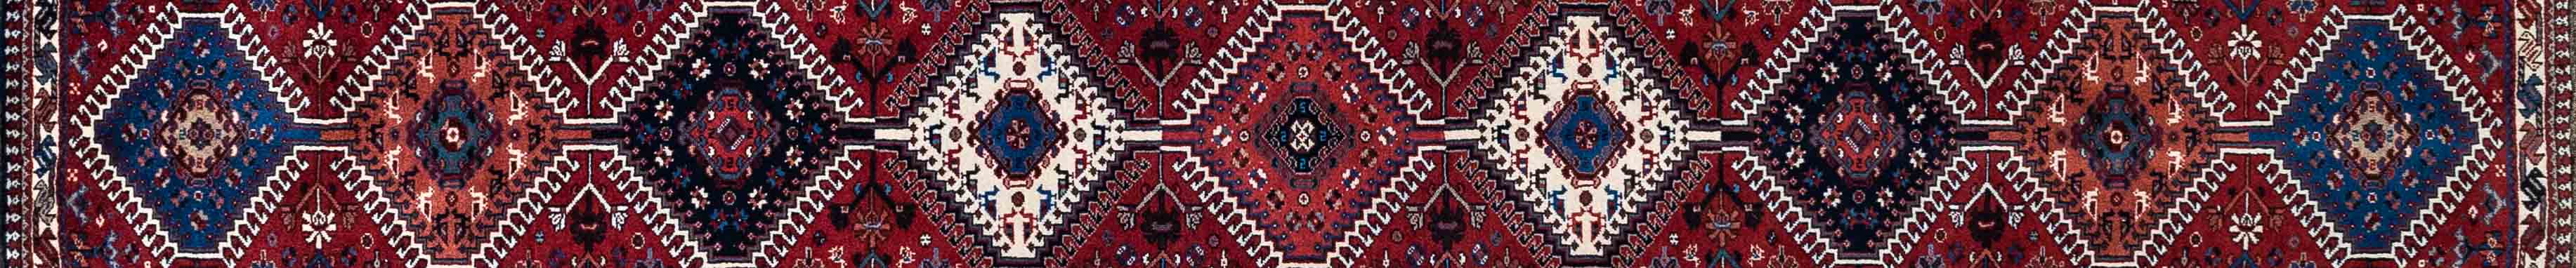 Yalameh Persian Carpet Rug N1Carpet Canada Montreal Tapis Persan 1190